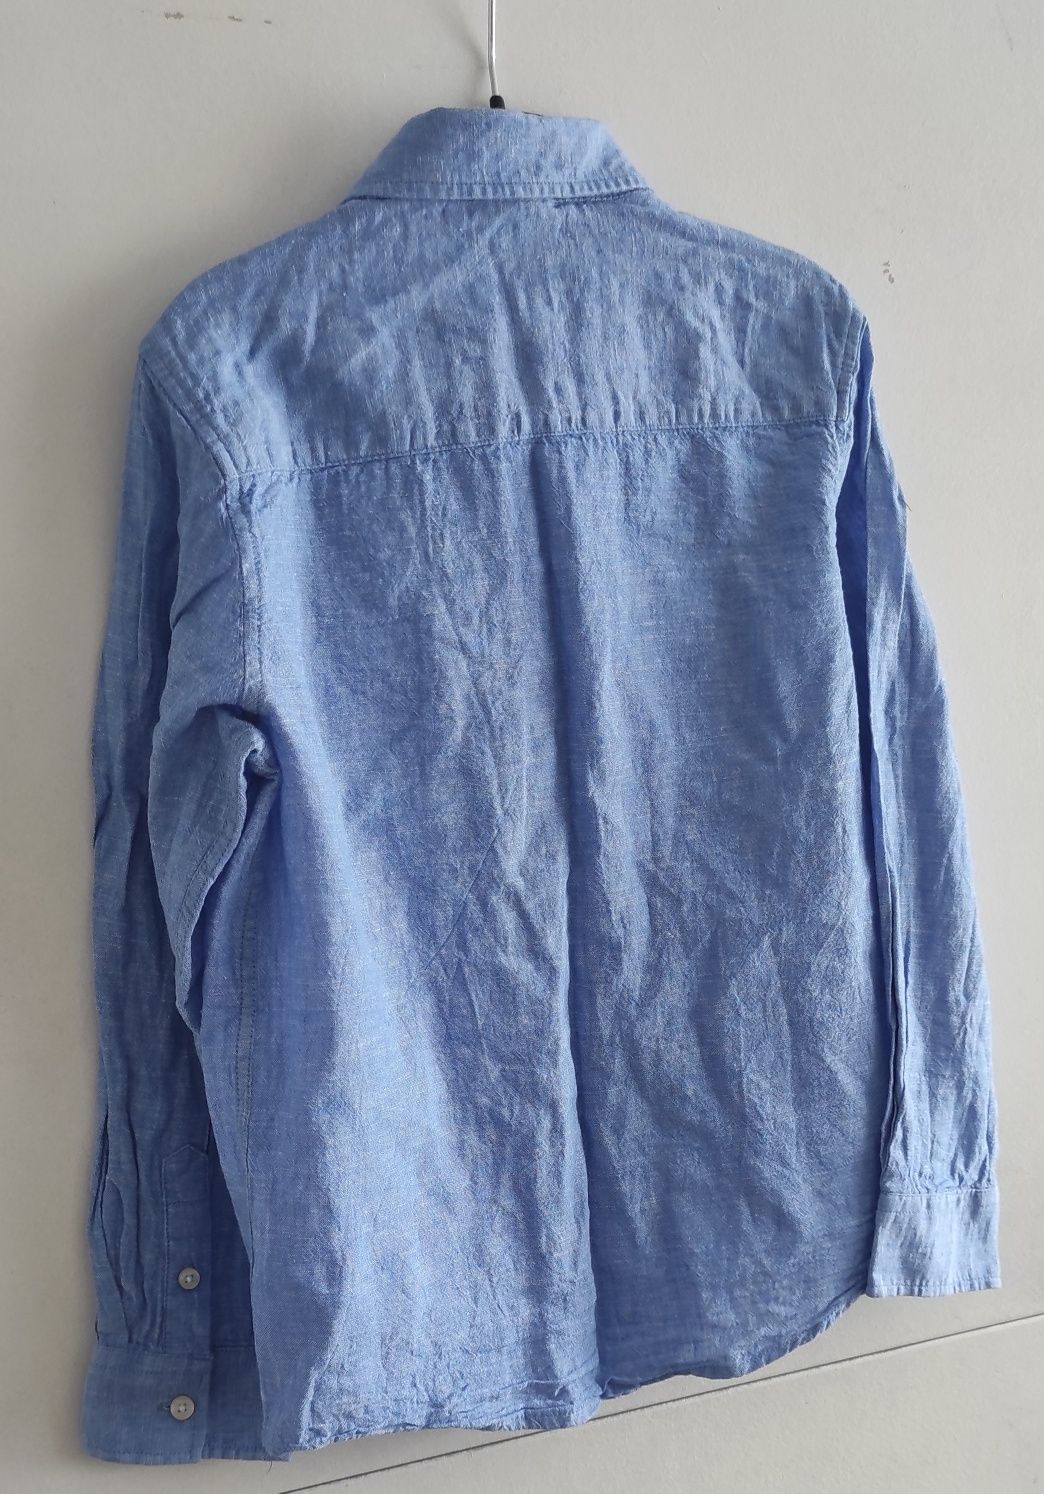 Niebieska koszula COOL CLUB by SMYK dla chłopca rozmiar 134cm